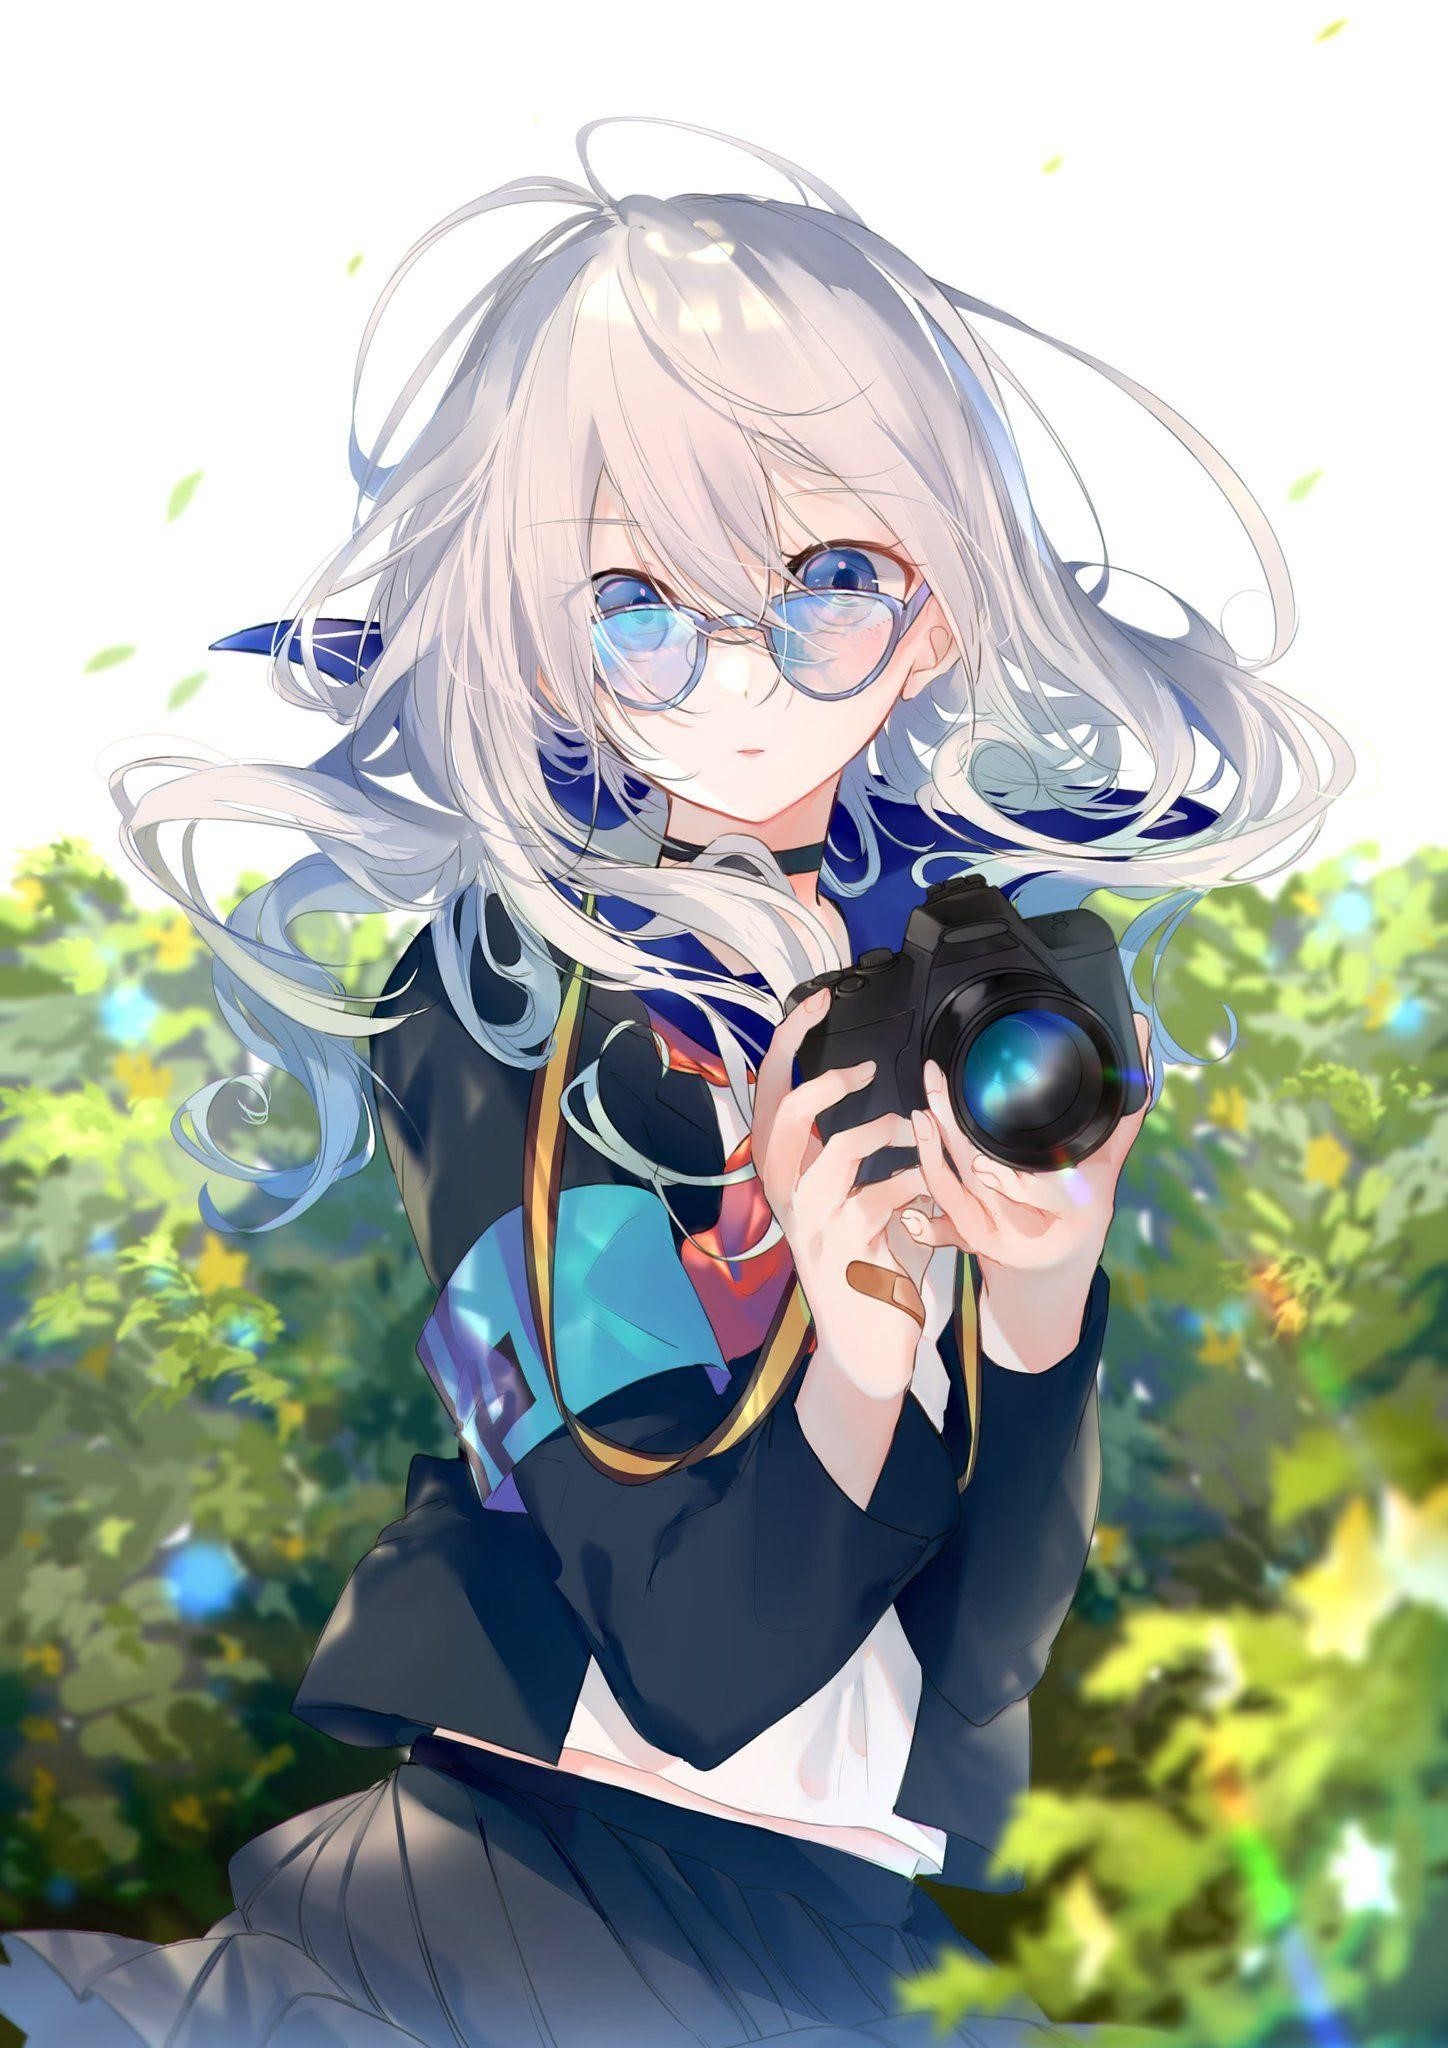 Ảnh anime nữ đeo kính cute là một xu hướng trong nghệ thuật anime và manga, thể hiện sự dễ thương và thu hút của những cô gái đeo kính, tạo nên một phong cách độc đáo và đáng yêu.